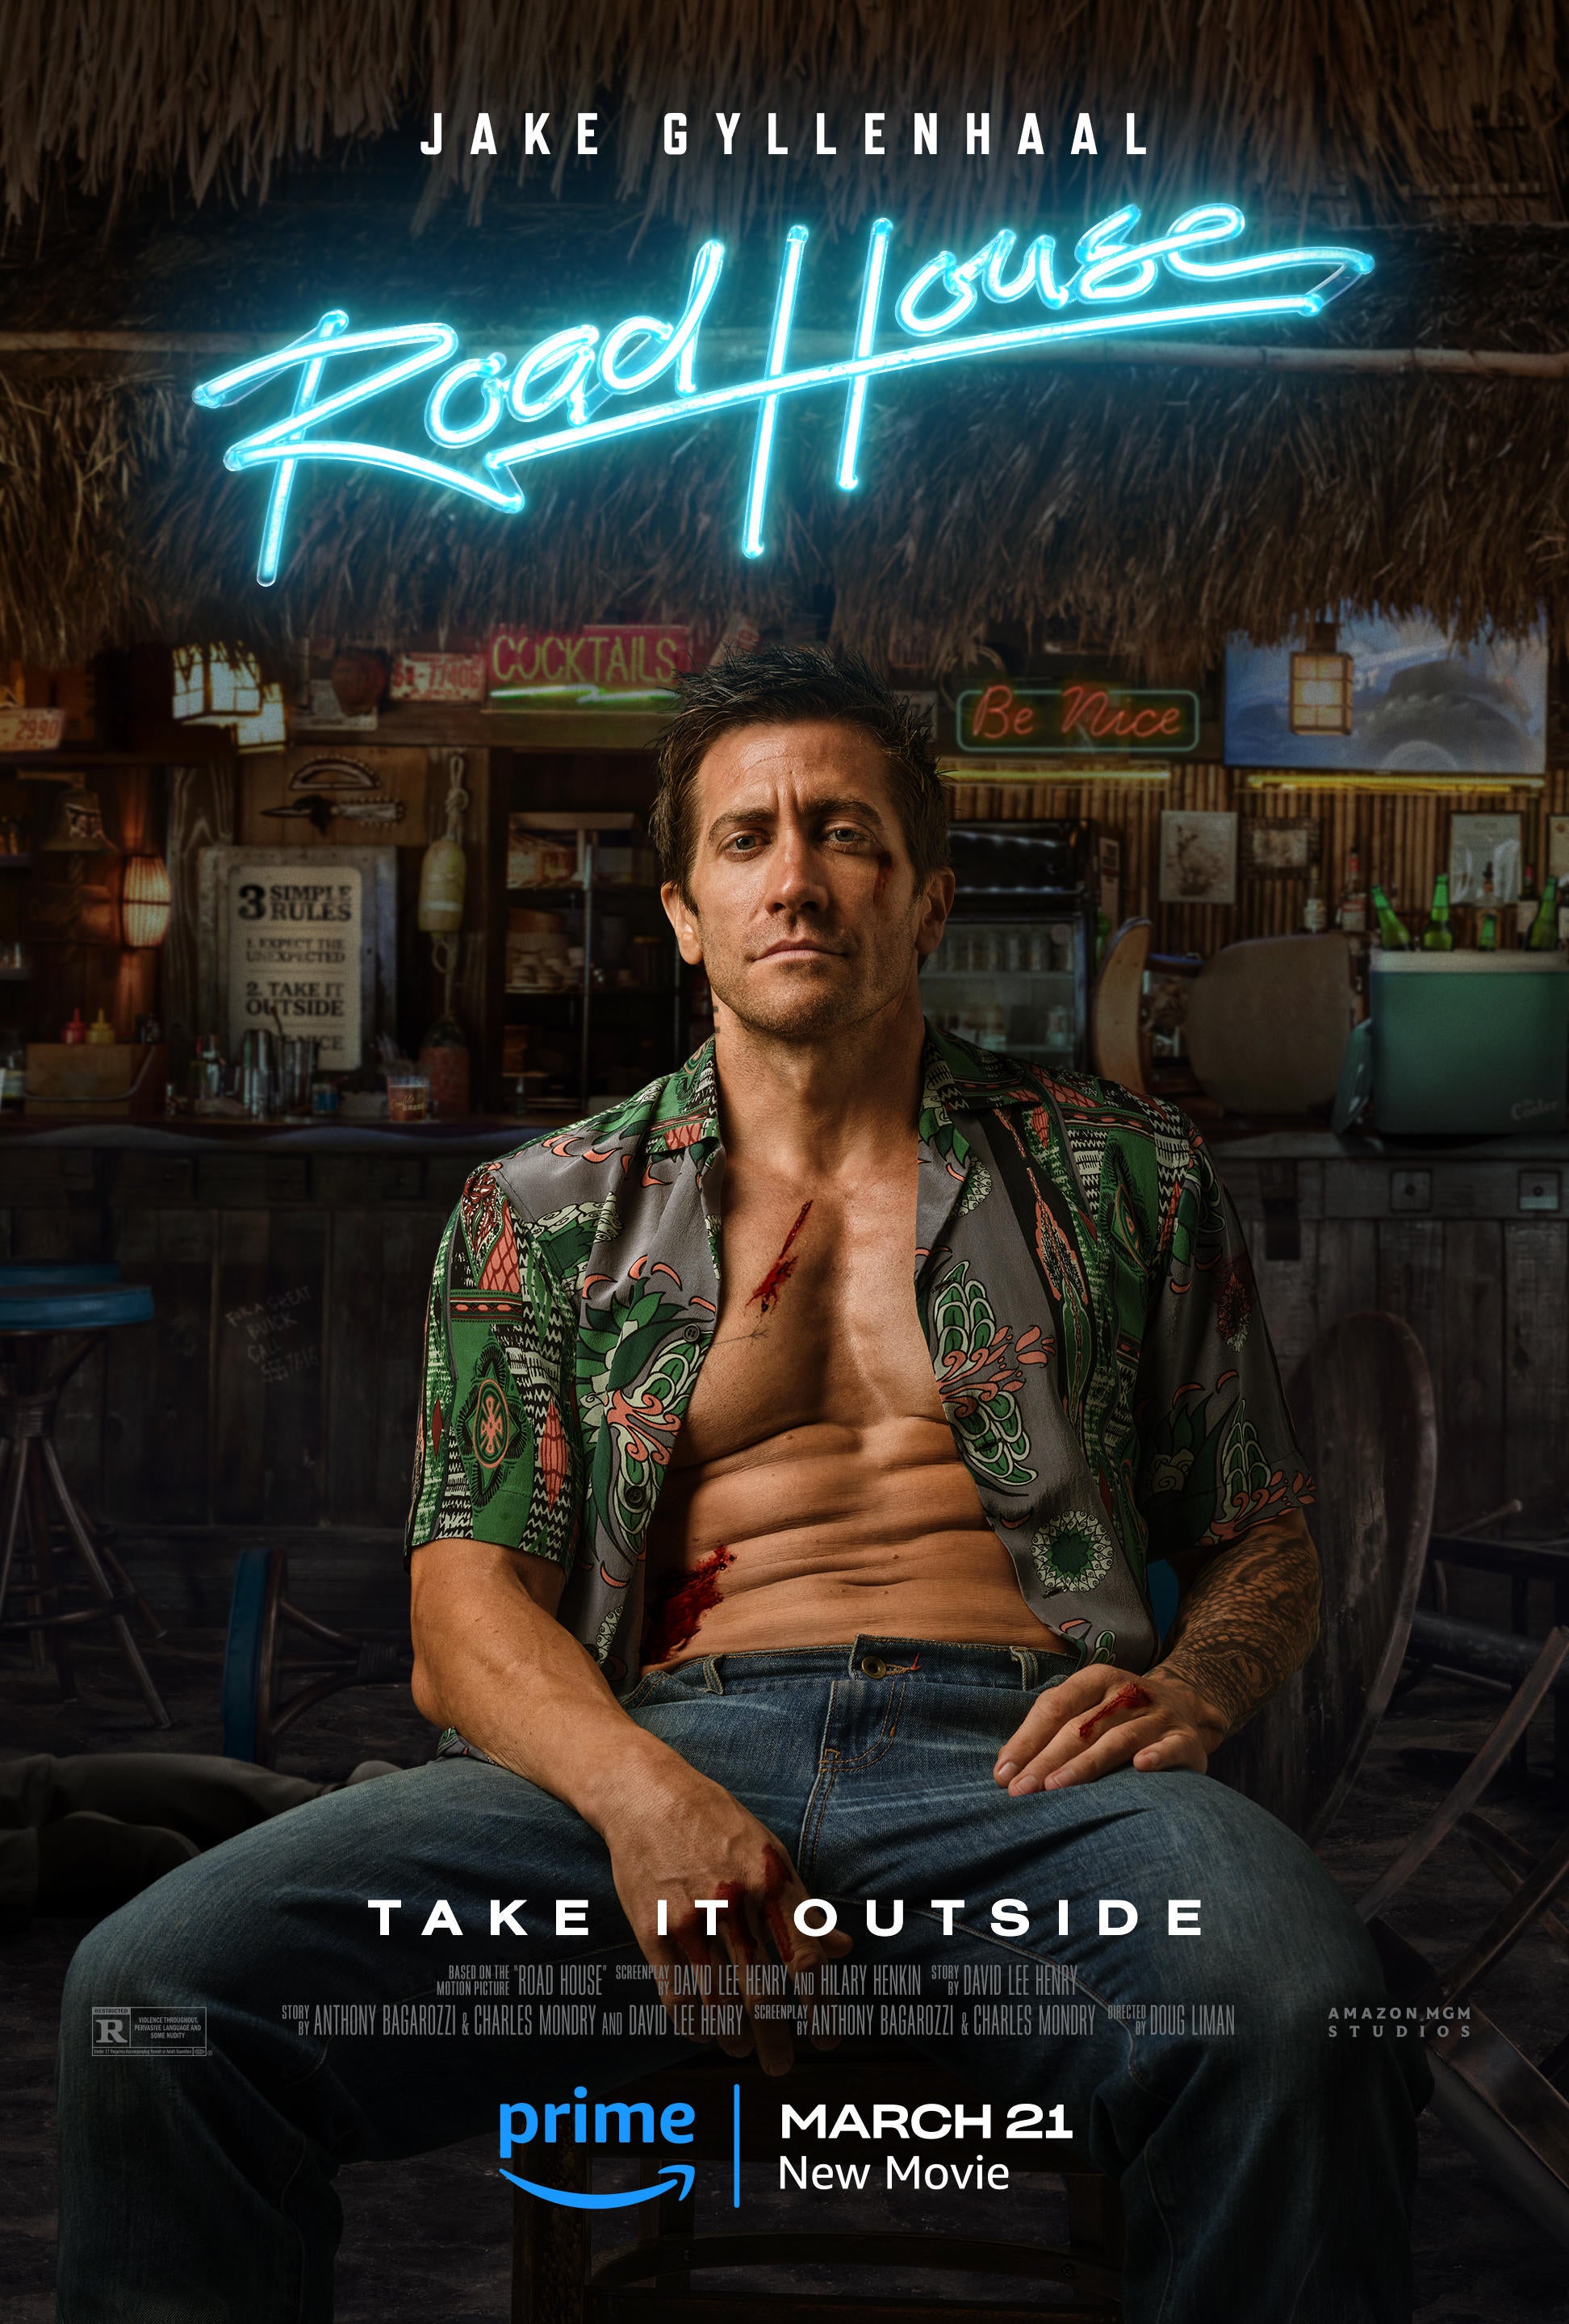 Jake Gyllenhaal's Road House Reboot Gets Poster